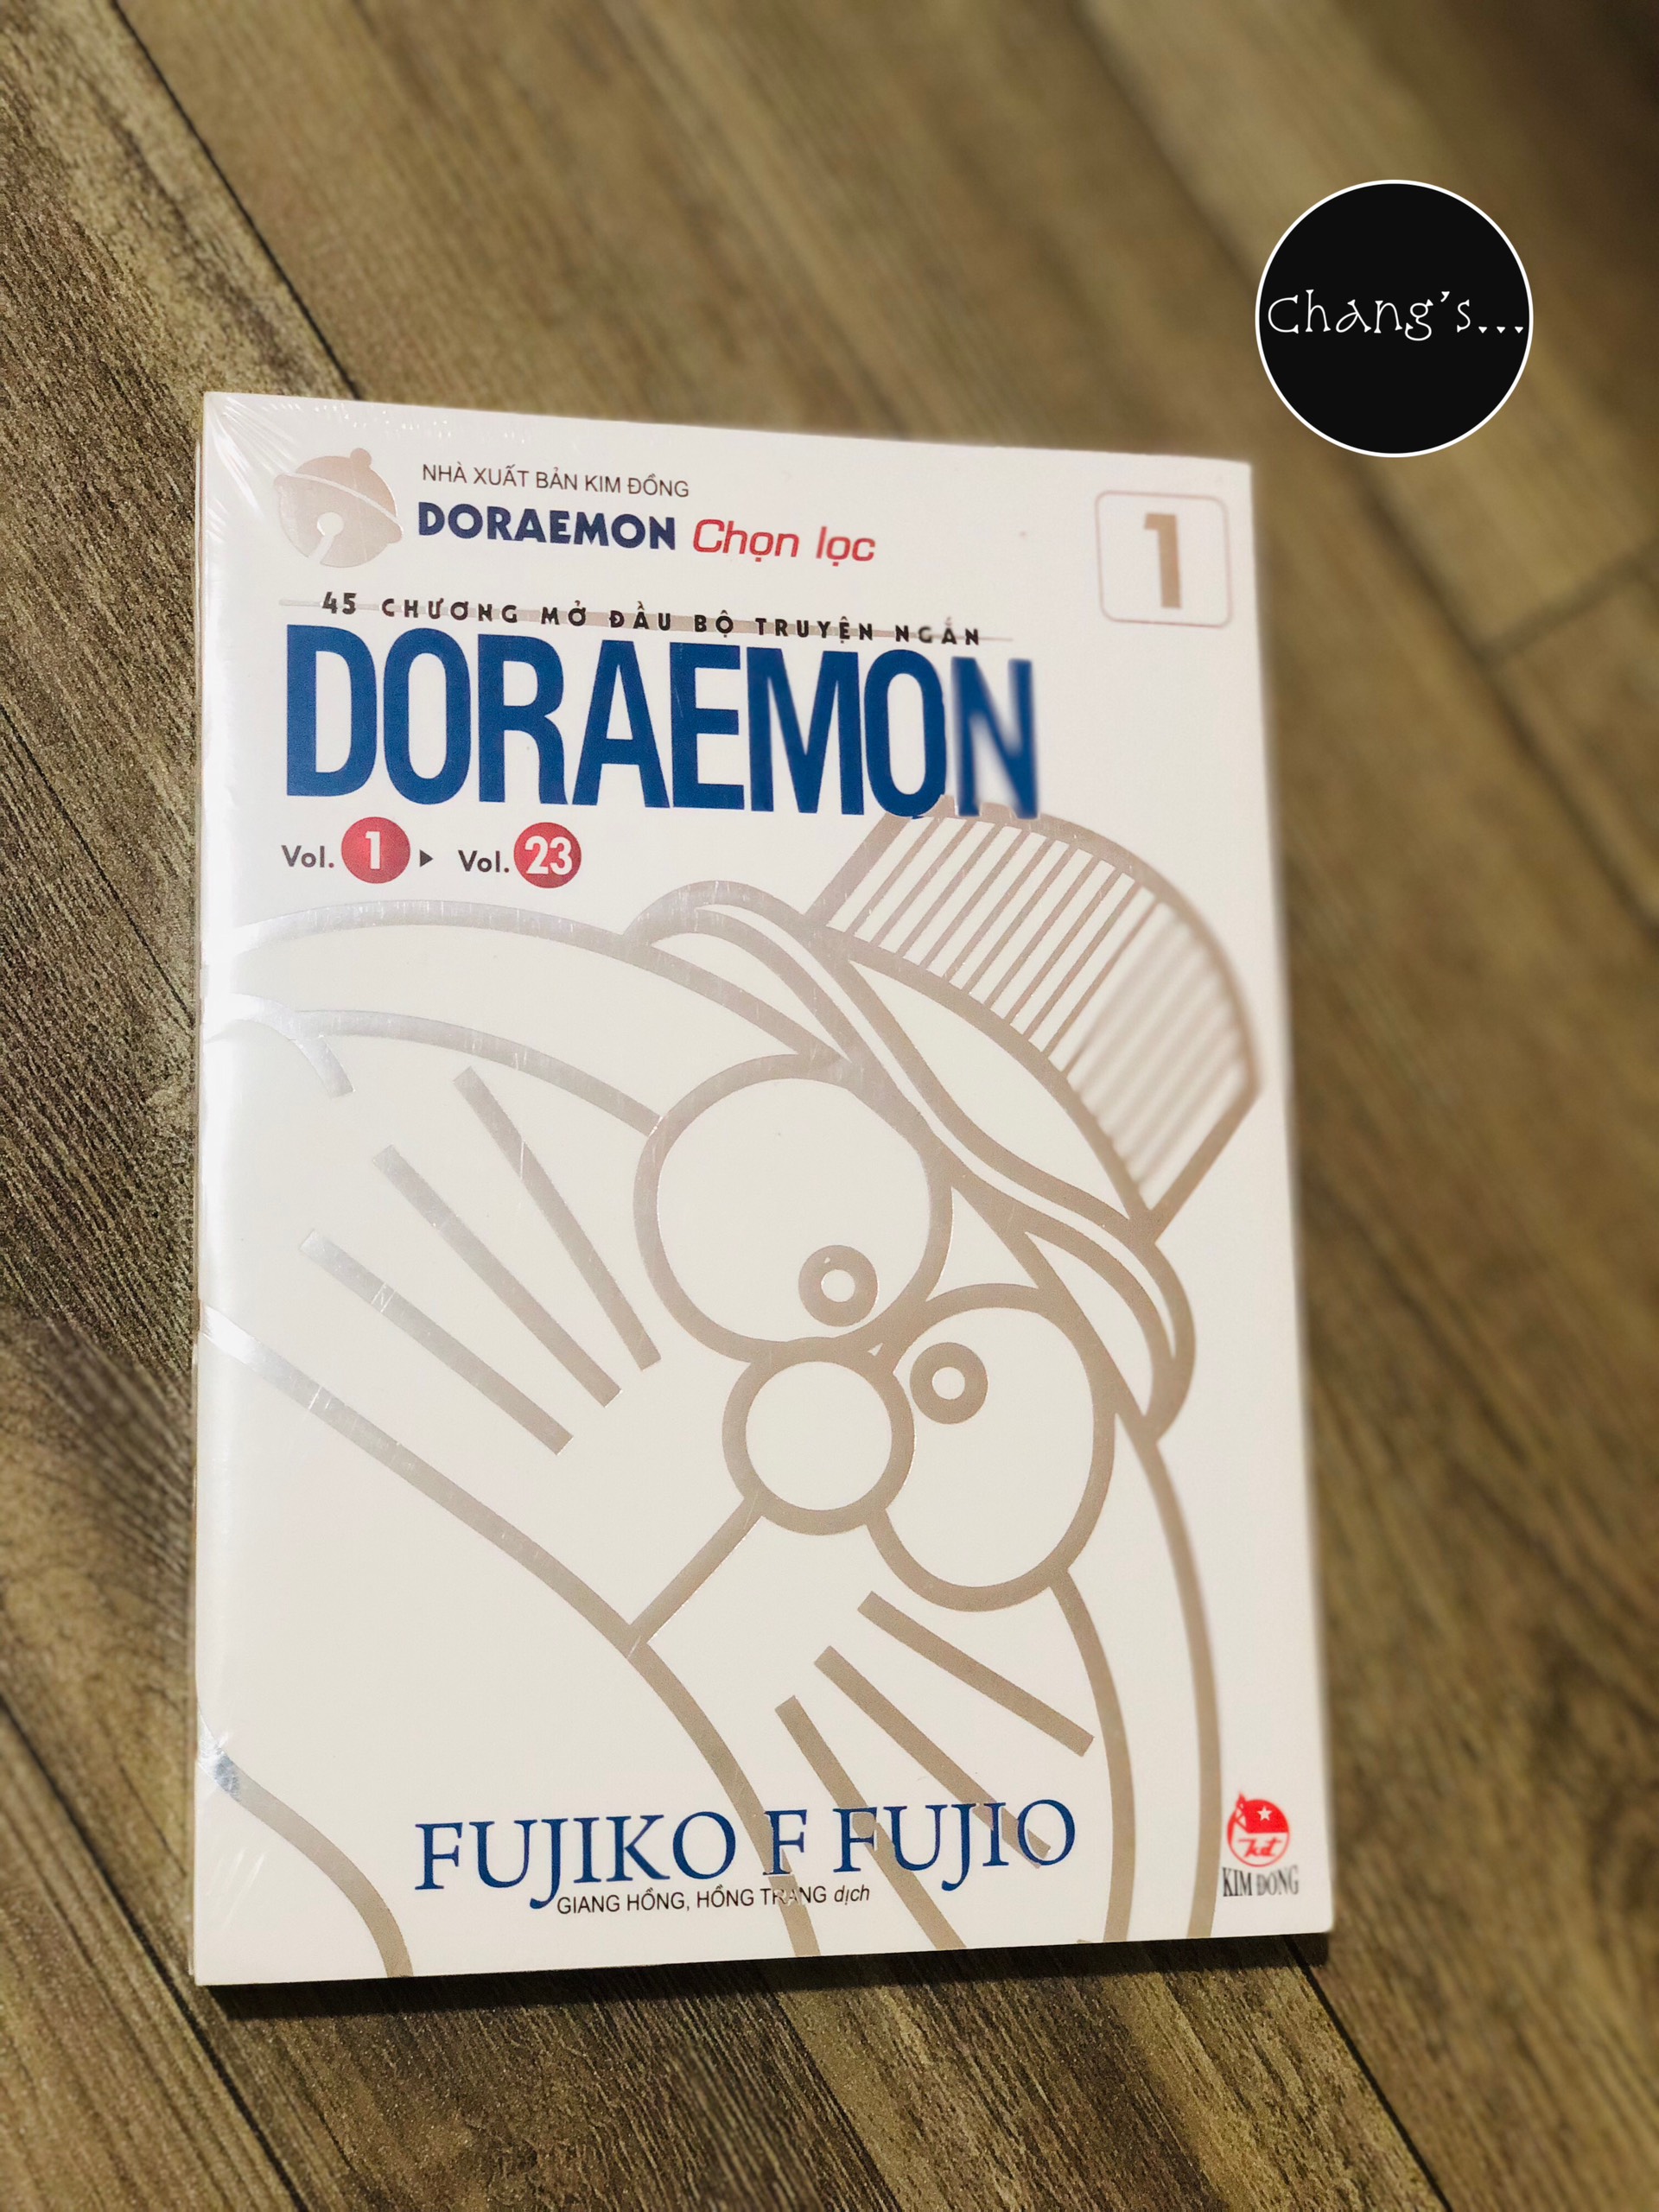 Doraemon - 45 Chương Mở Đầu Bộ Truyện Ngắn trọn bộ 2 tập